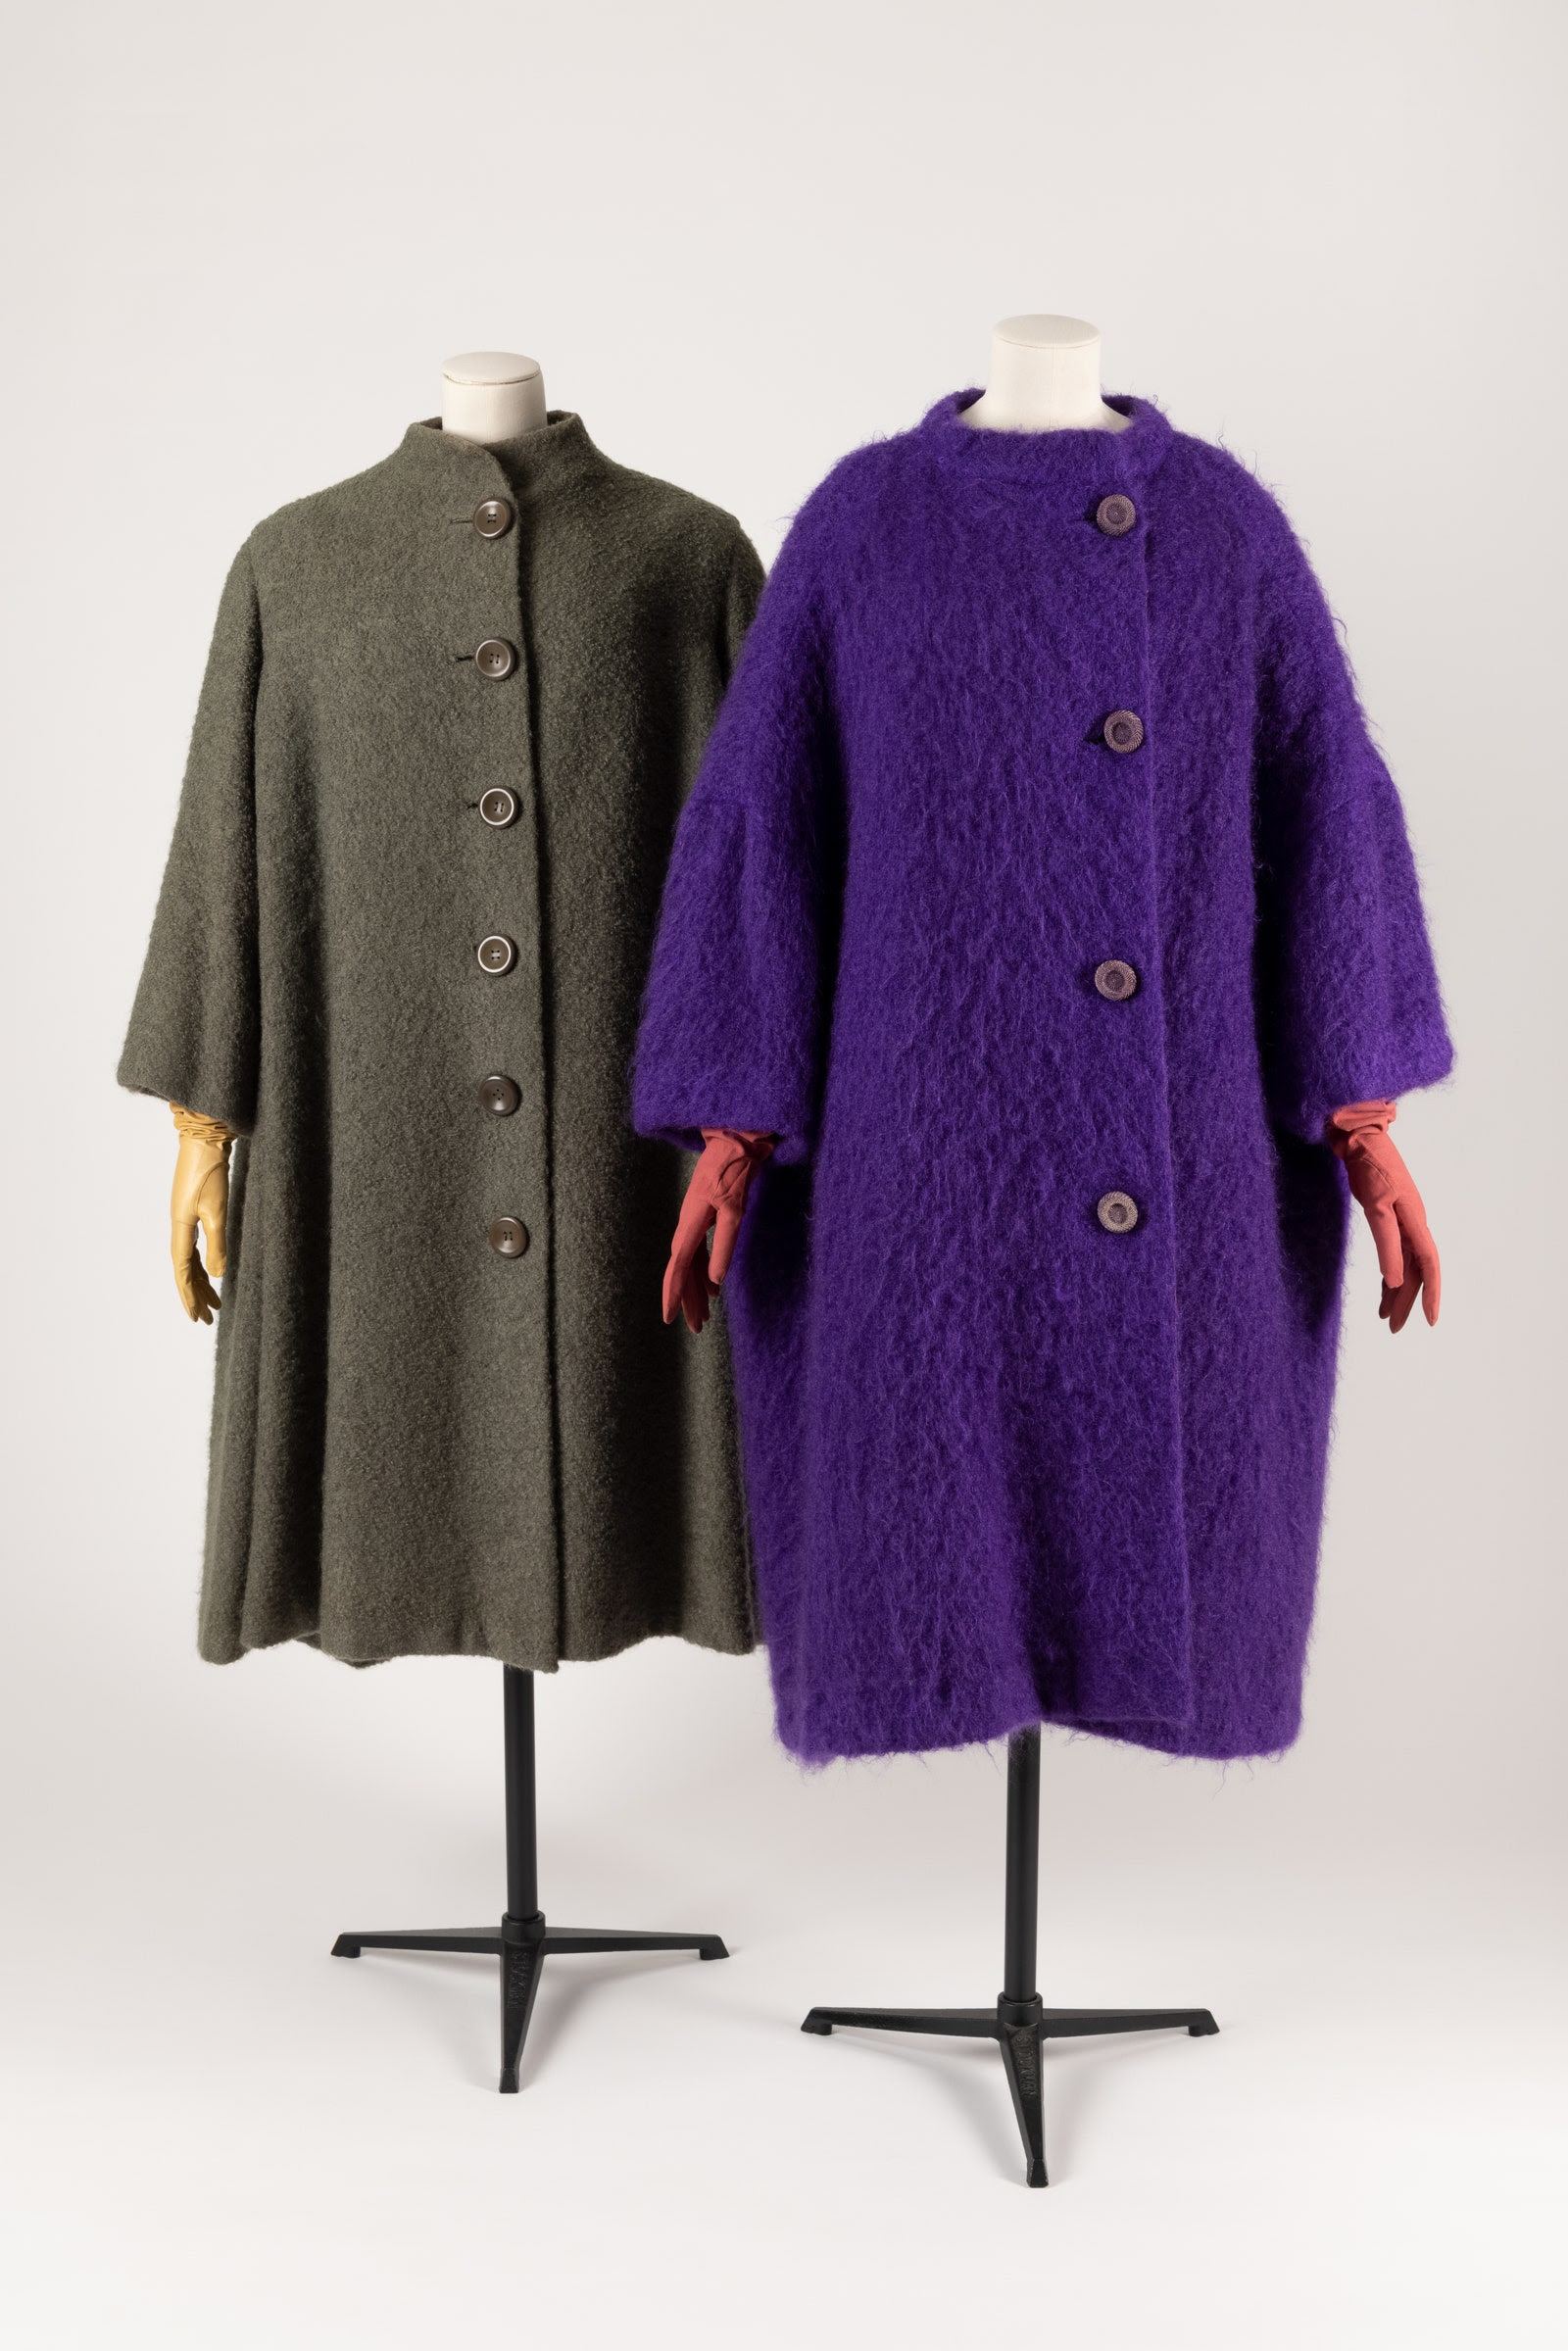 A la izquierda abrigo en boucl de lana oliva de Dior  a la derecha abrigo morado de mohair de Balenciaga .